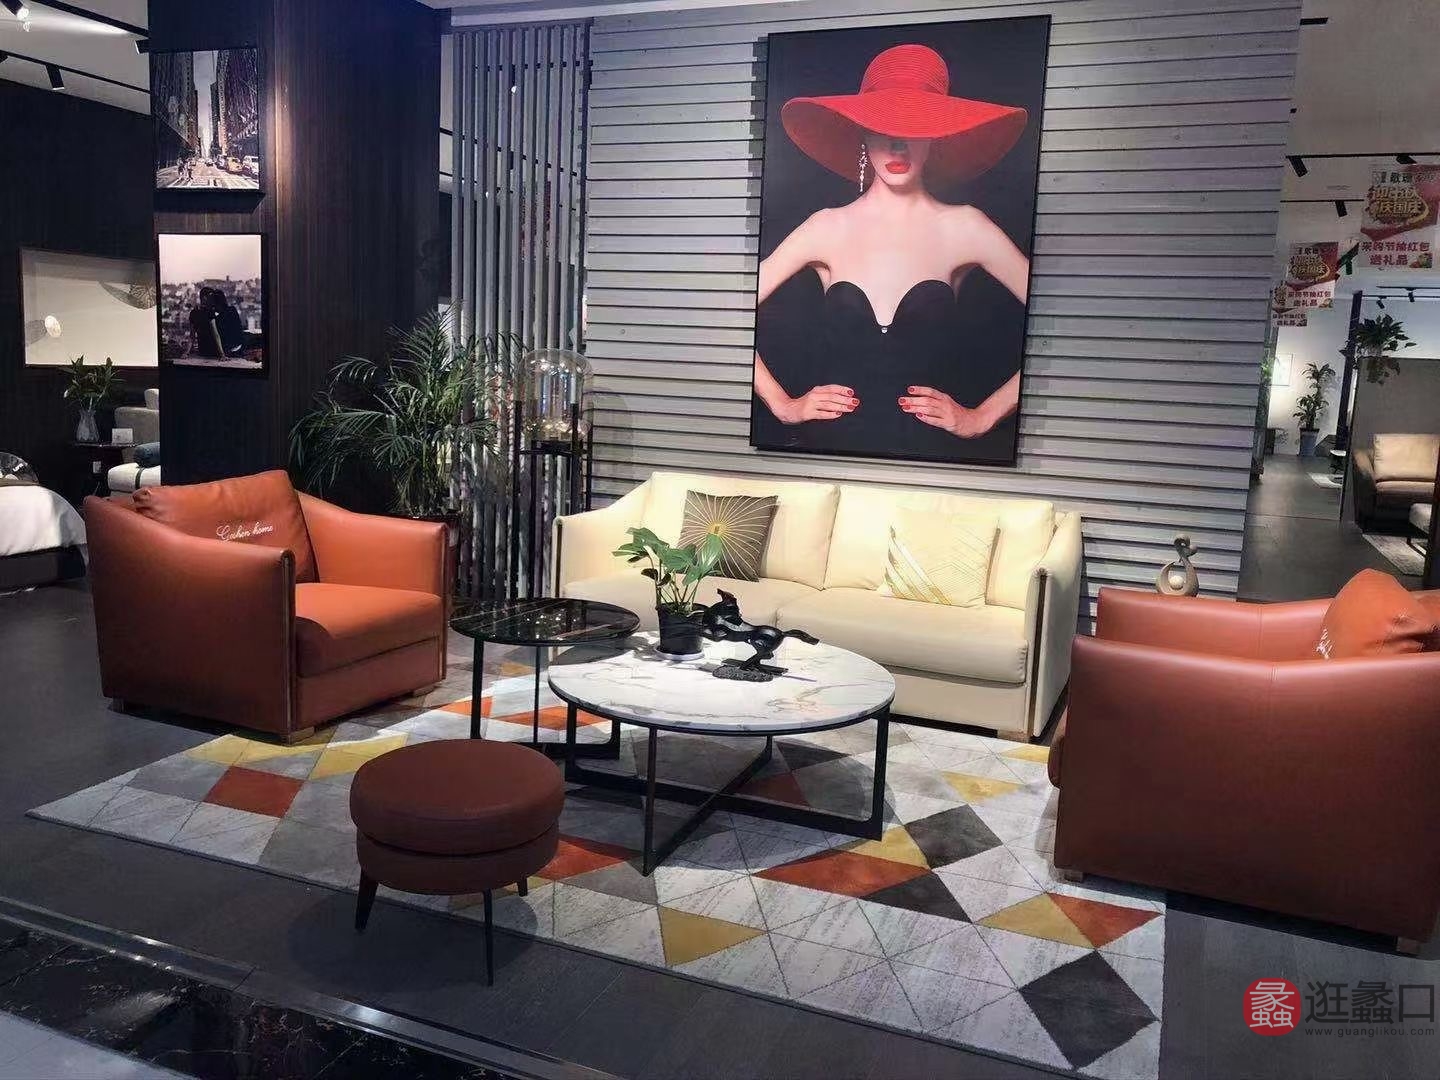 纯生生态家家具现代风格客厅真皮软沙发直排沙发组合红+白轻奢简约CSSTJ017